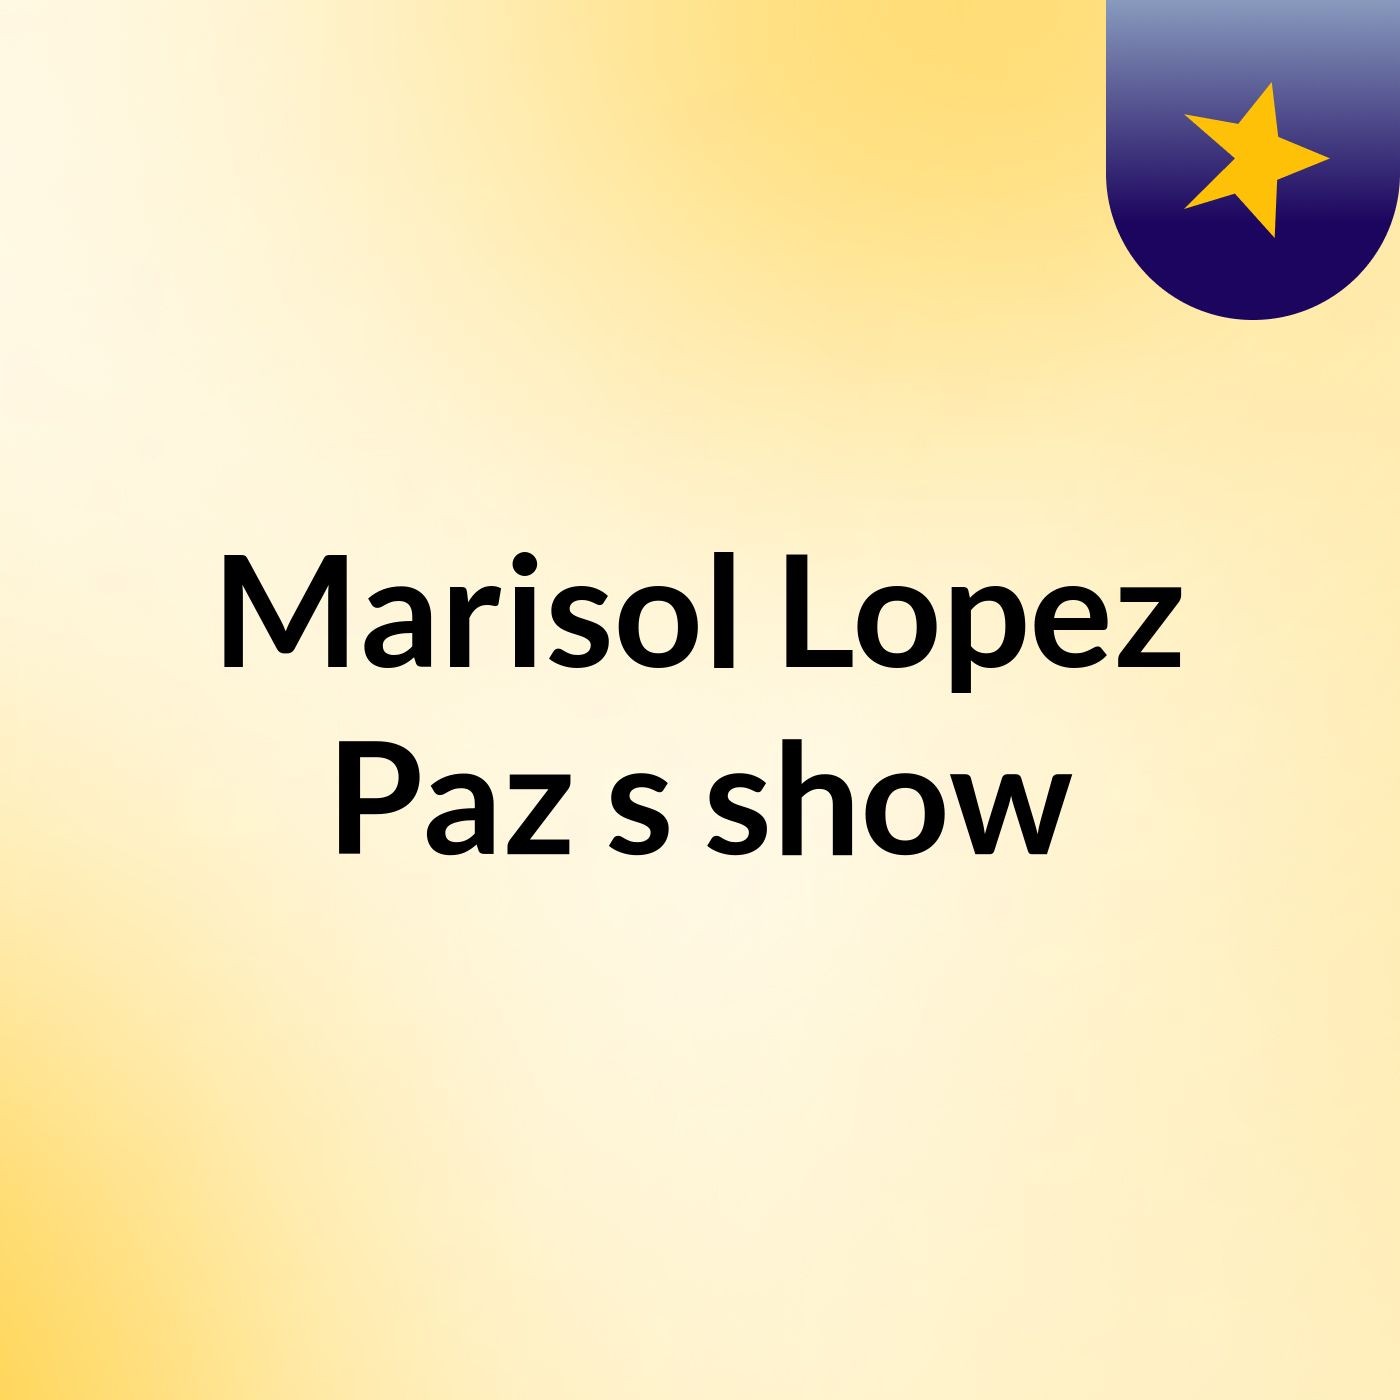 Marisol Lopez Paz's show